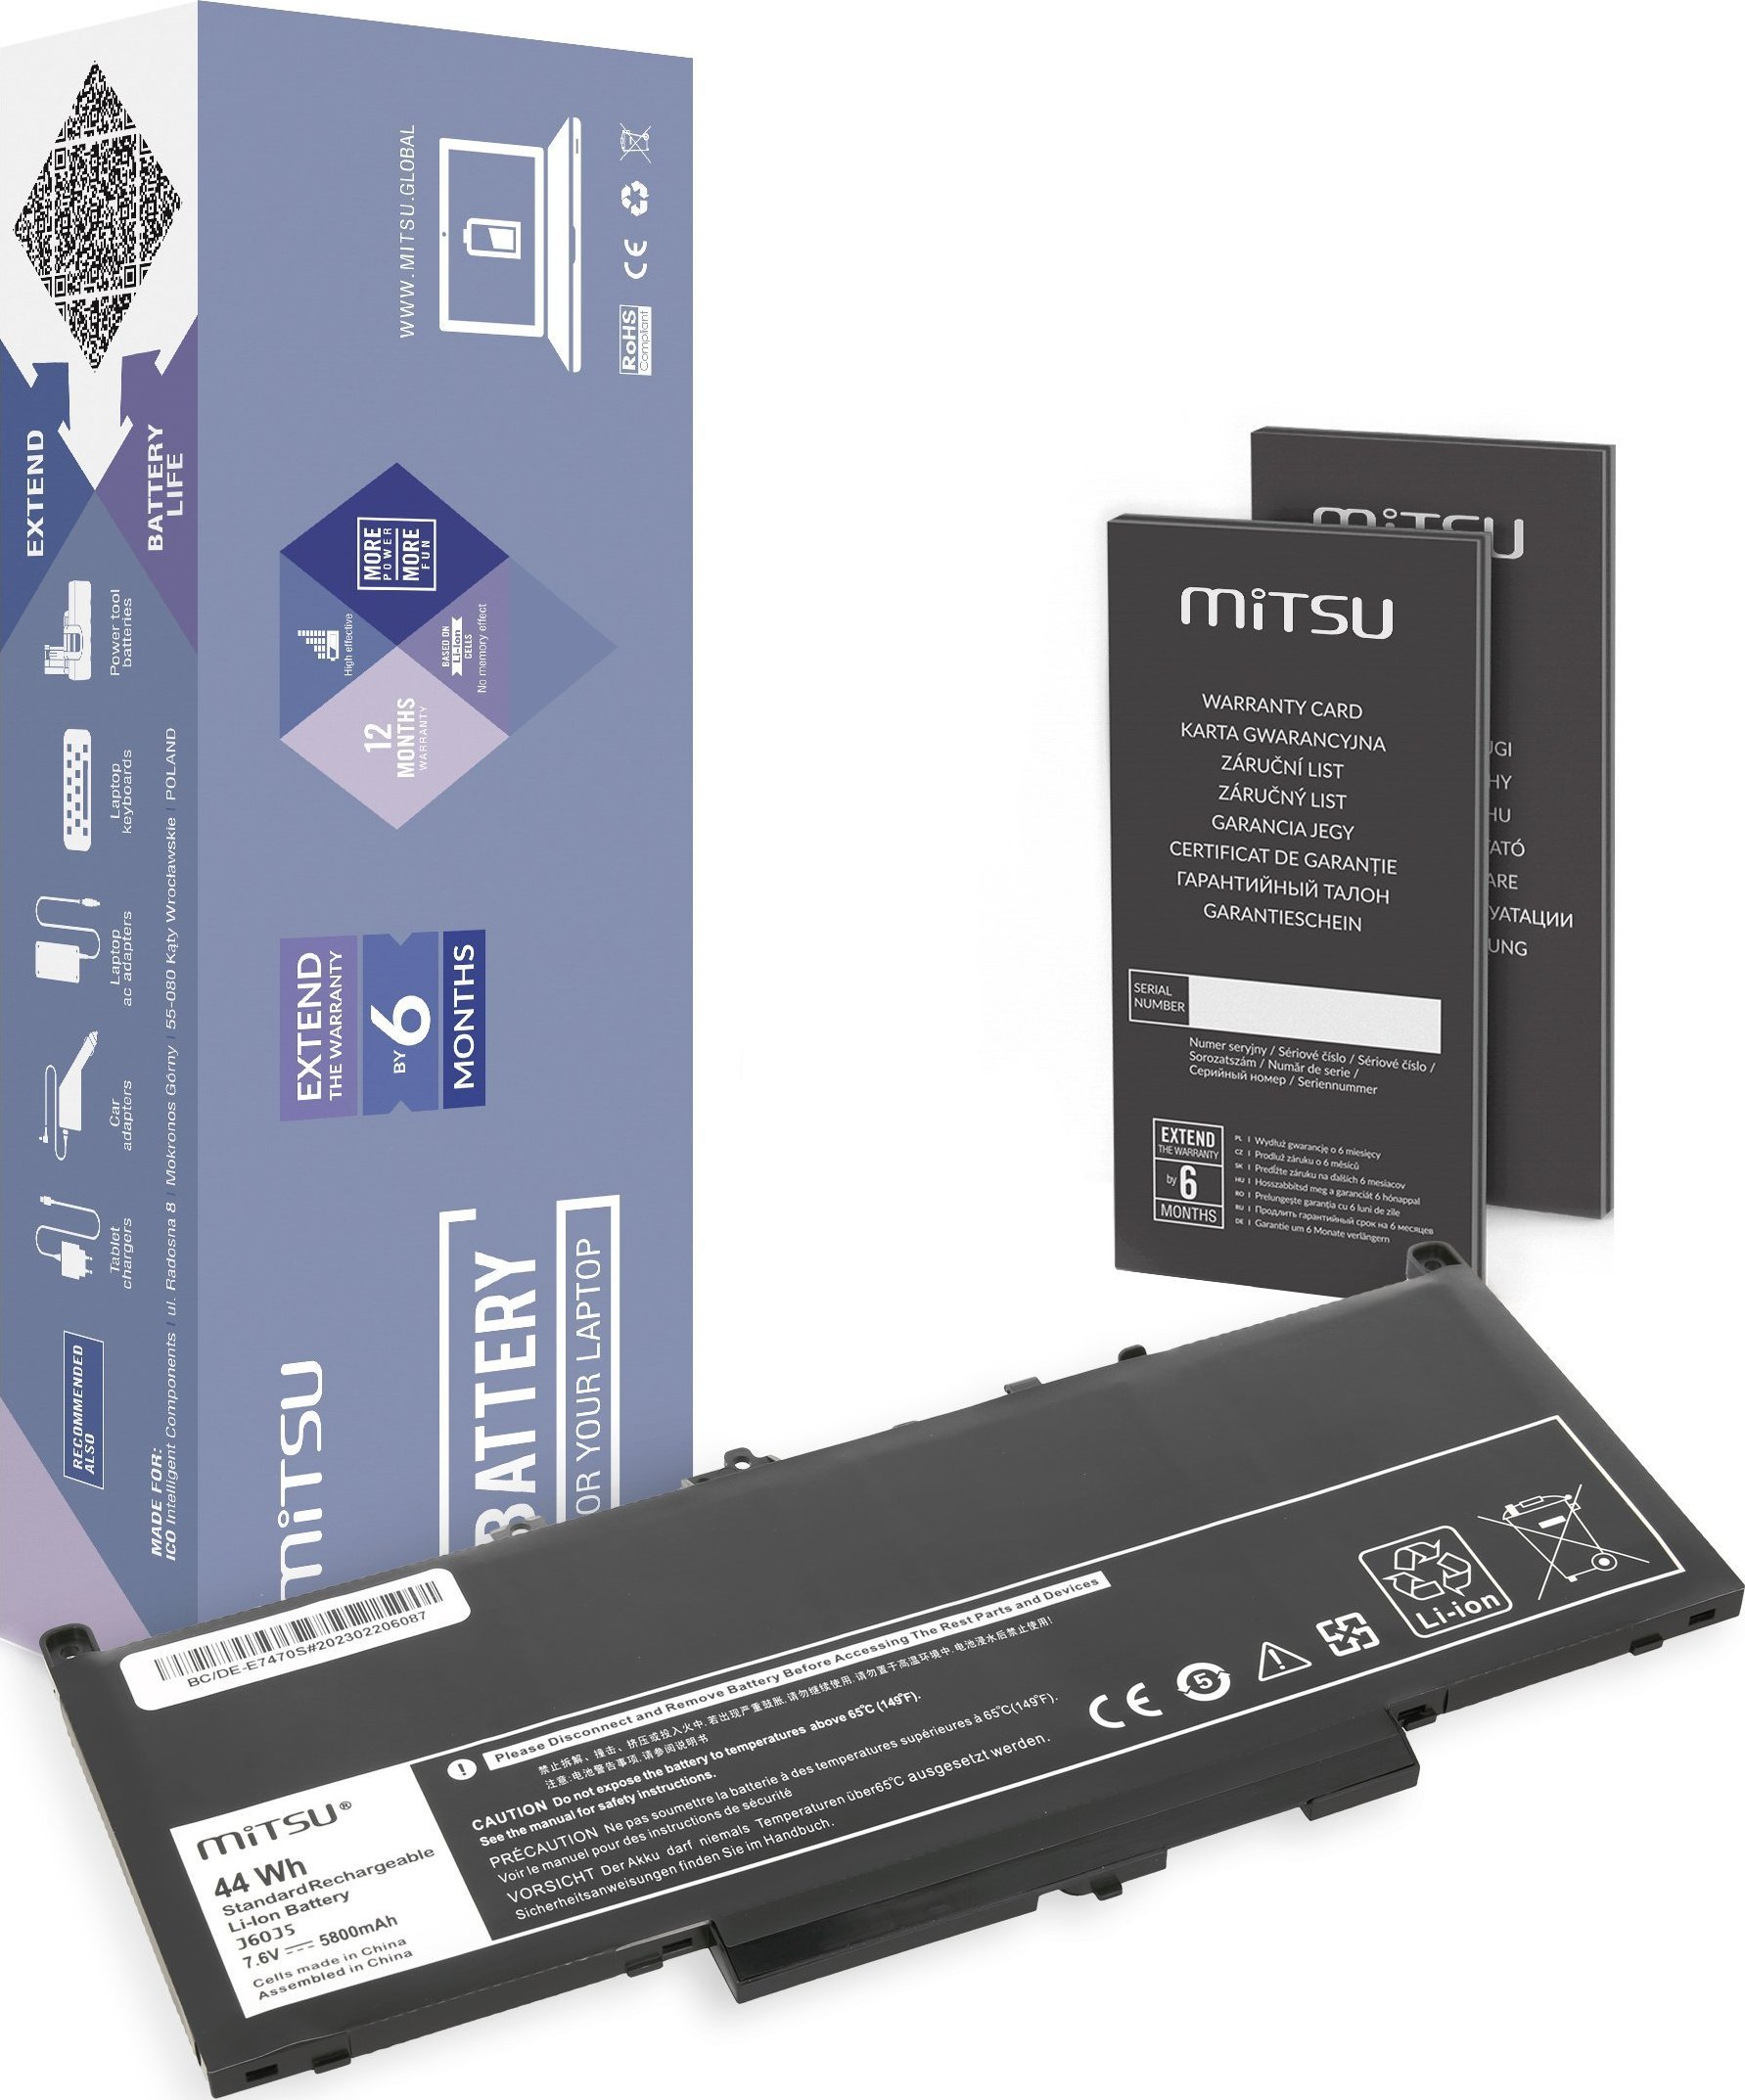 Bateria Mitsu J60J5 GG4FM MC34Y pentru Dell E7270 E7470.